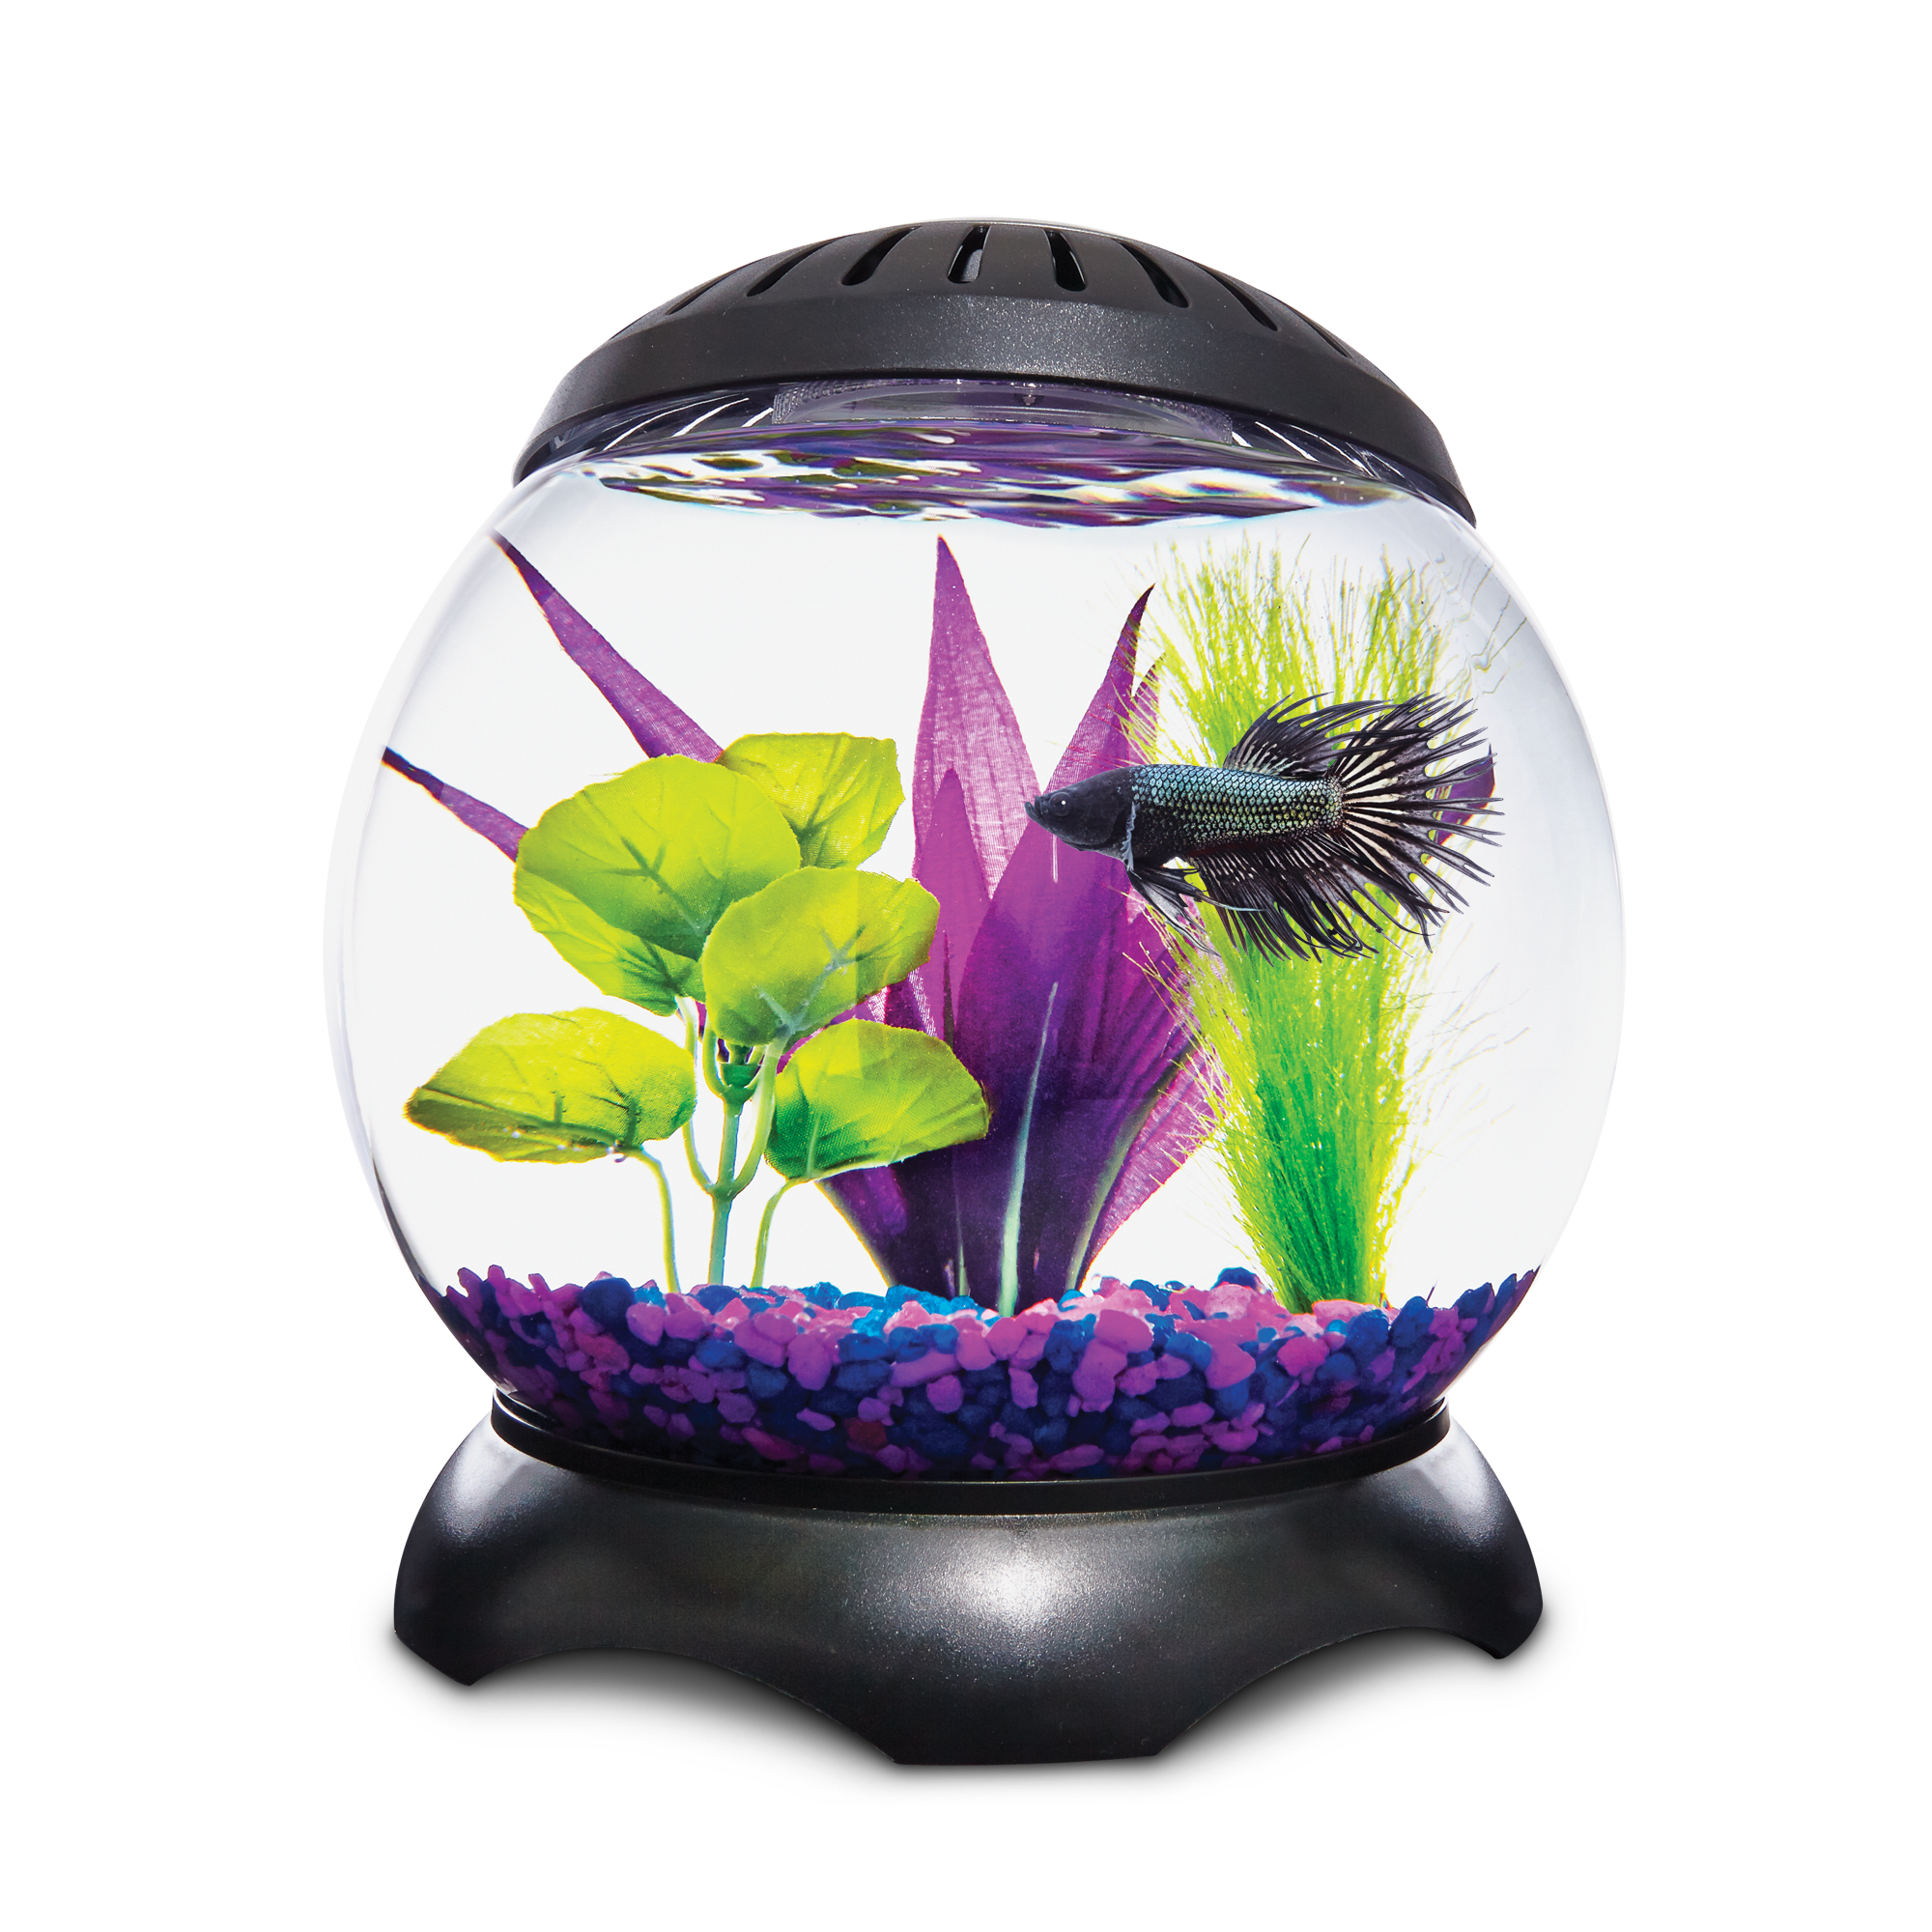 Imagitarium Glass Versa Aquarium, 9.5 Gallons